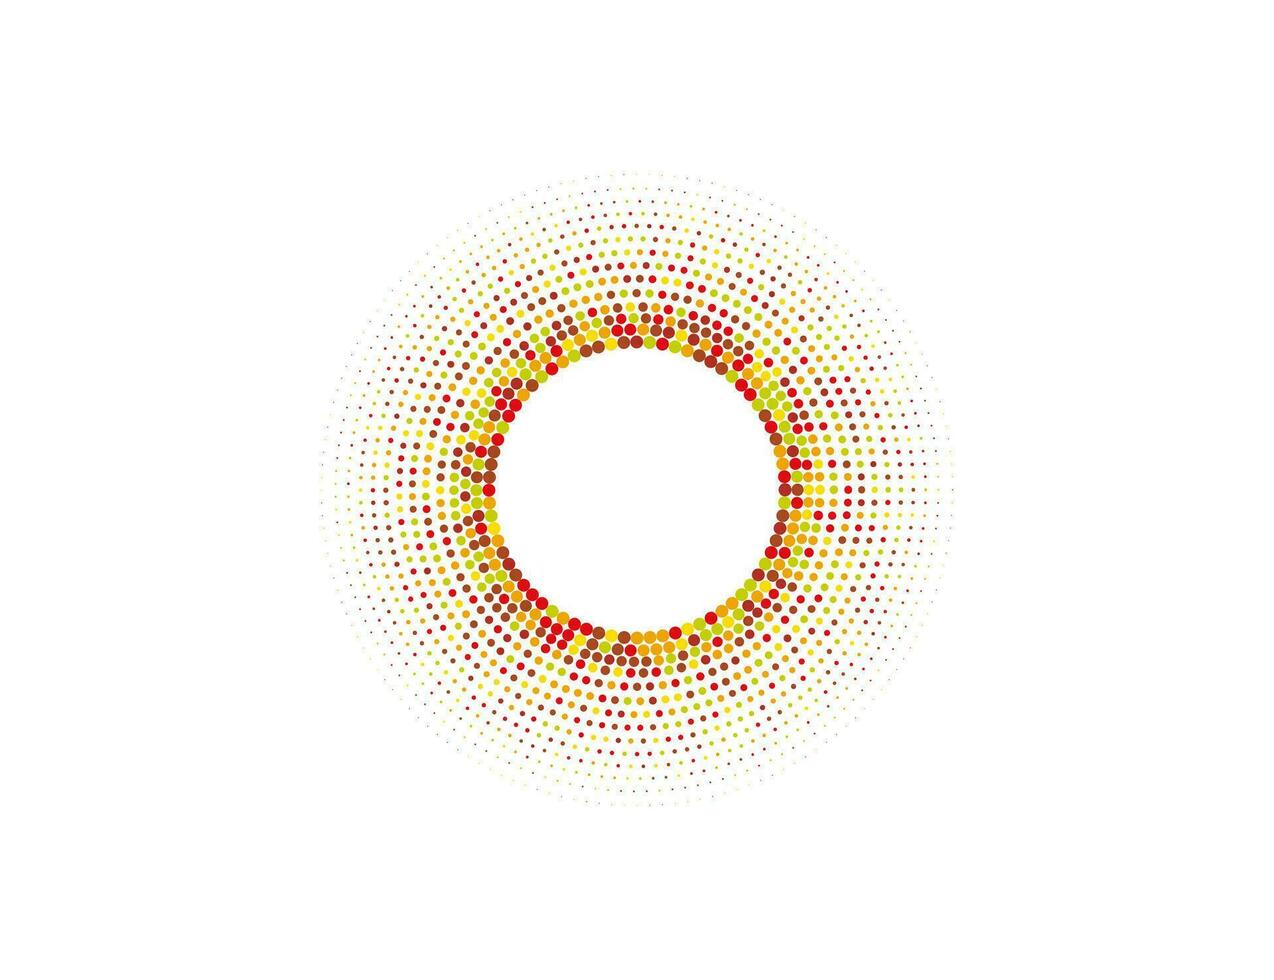 halftone kleur dots in cirkel het formulier, logo. vector illustratie.